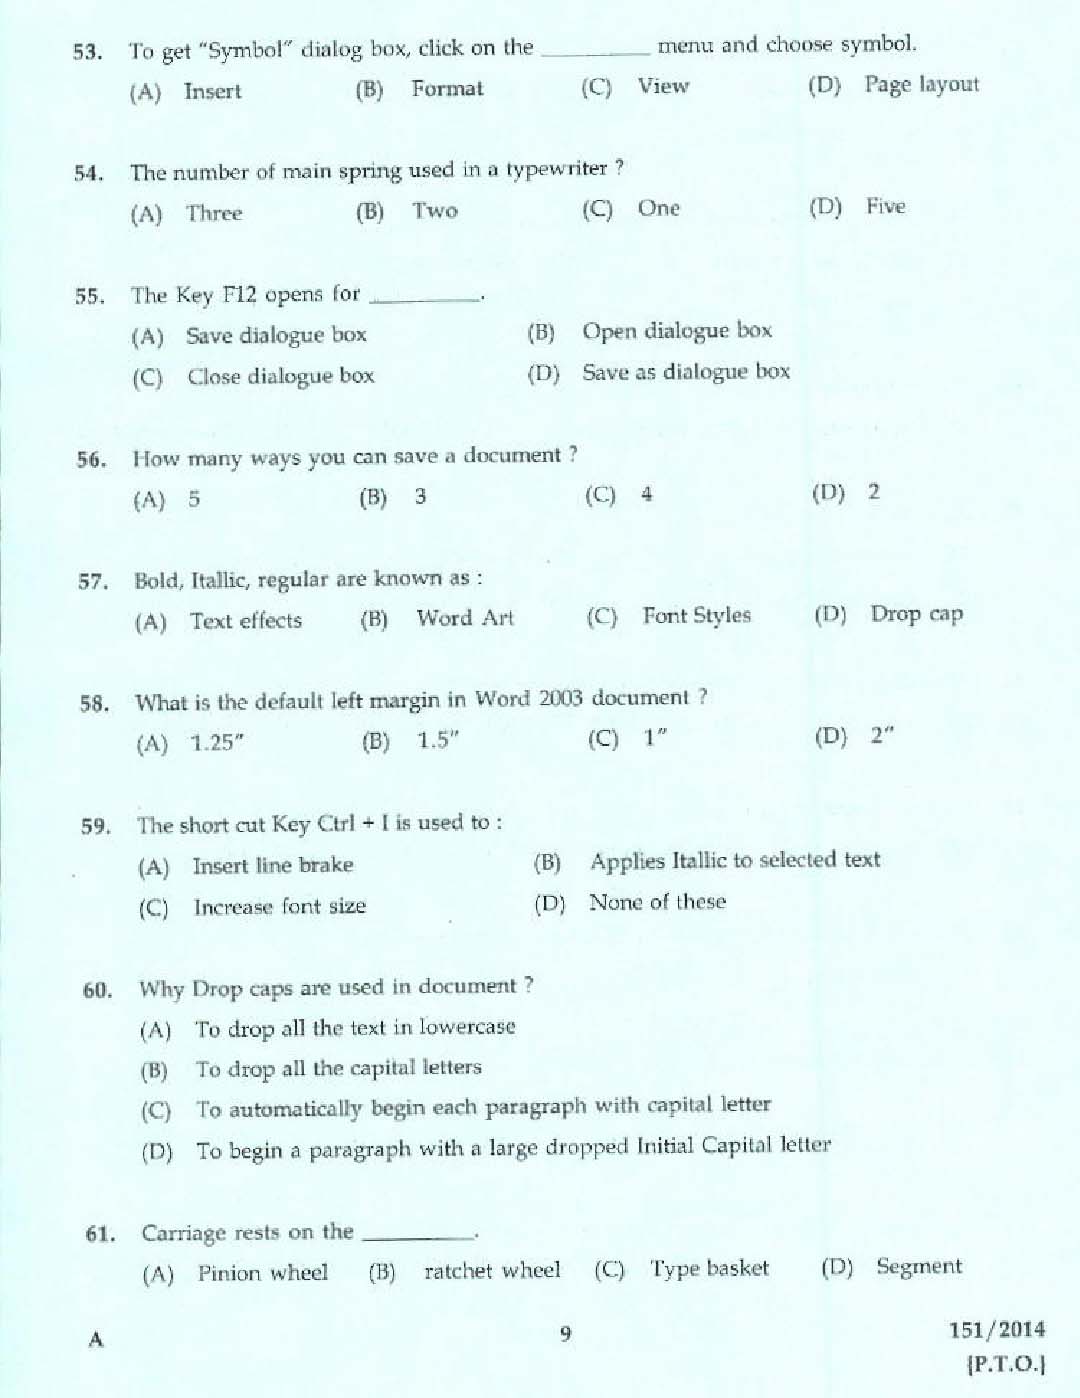 Kerala PSC Confidential Assistant Grade II Exam 2014 Question Paper Code 1512014 7